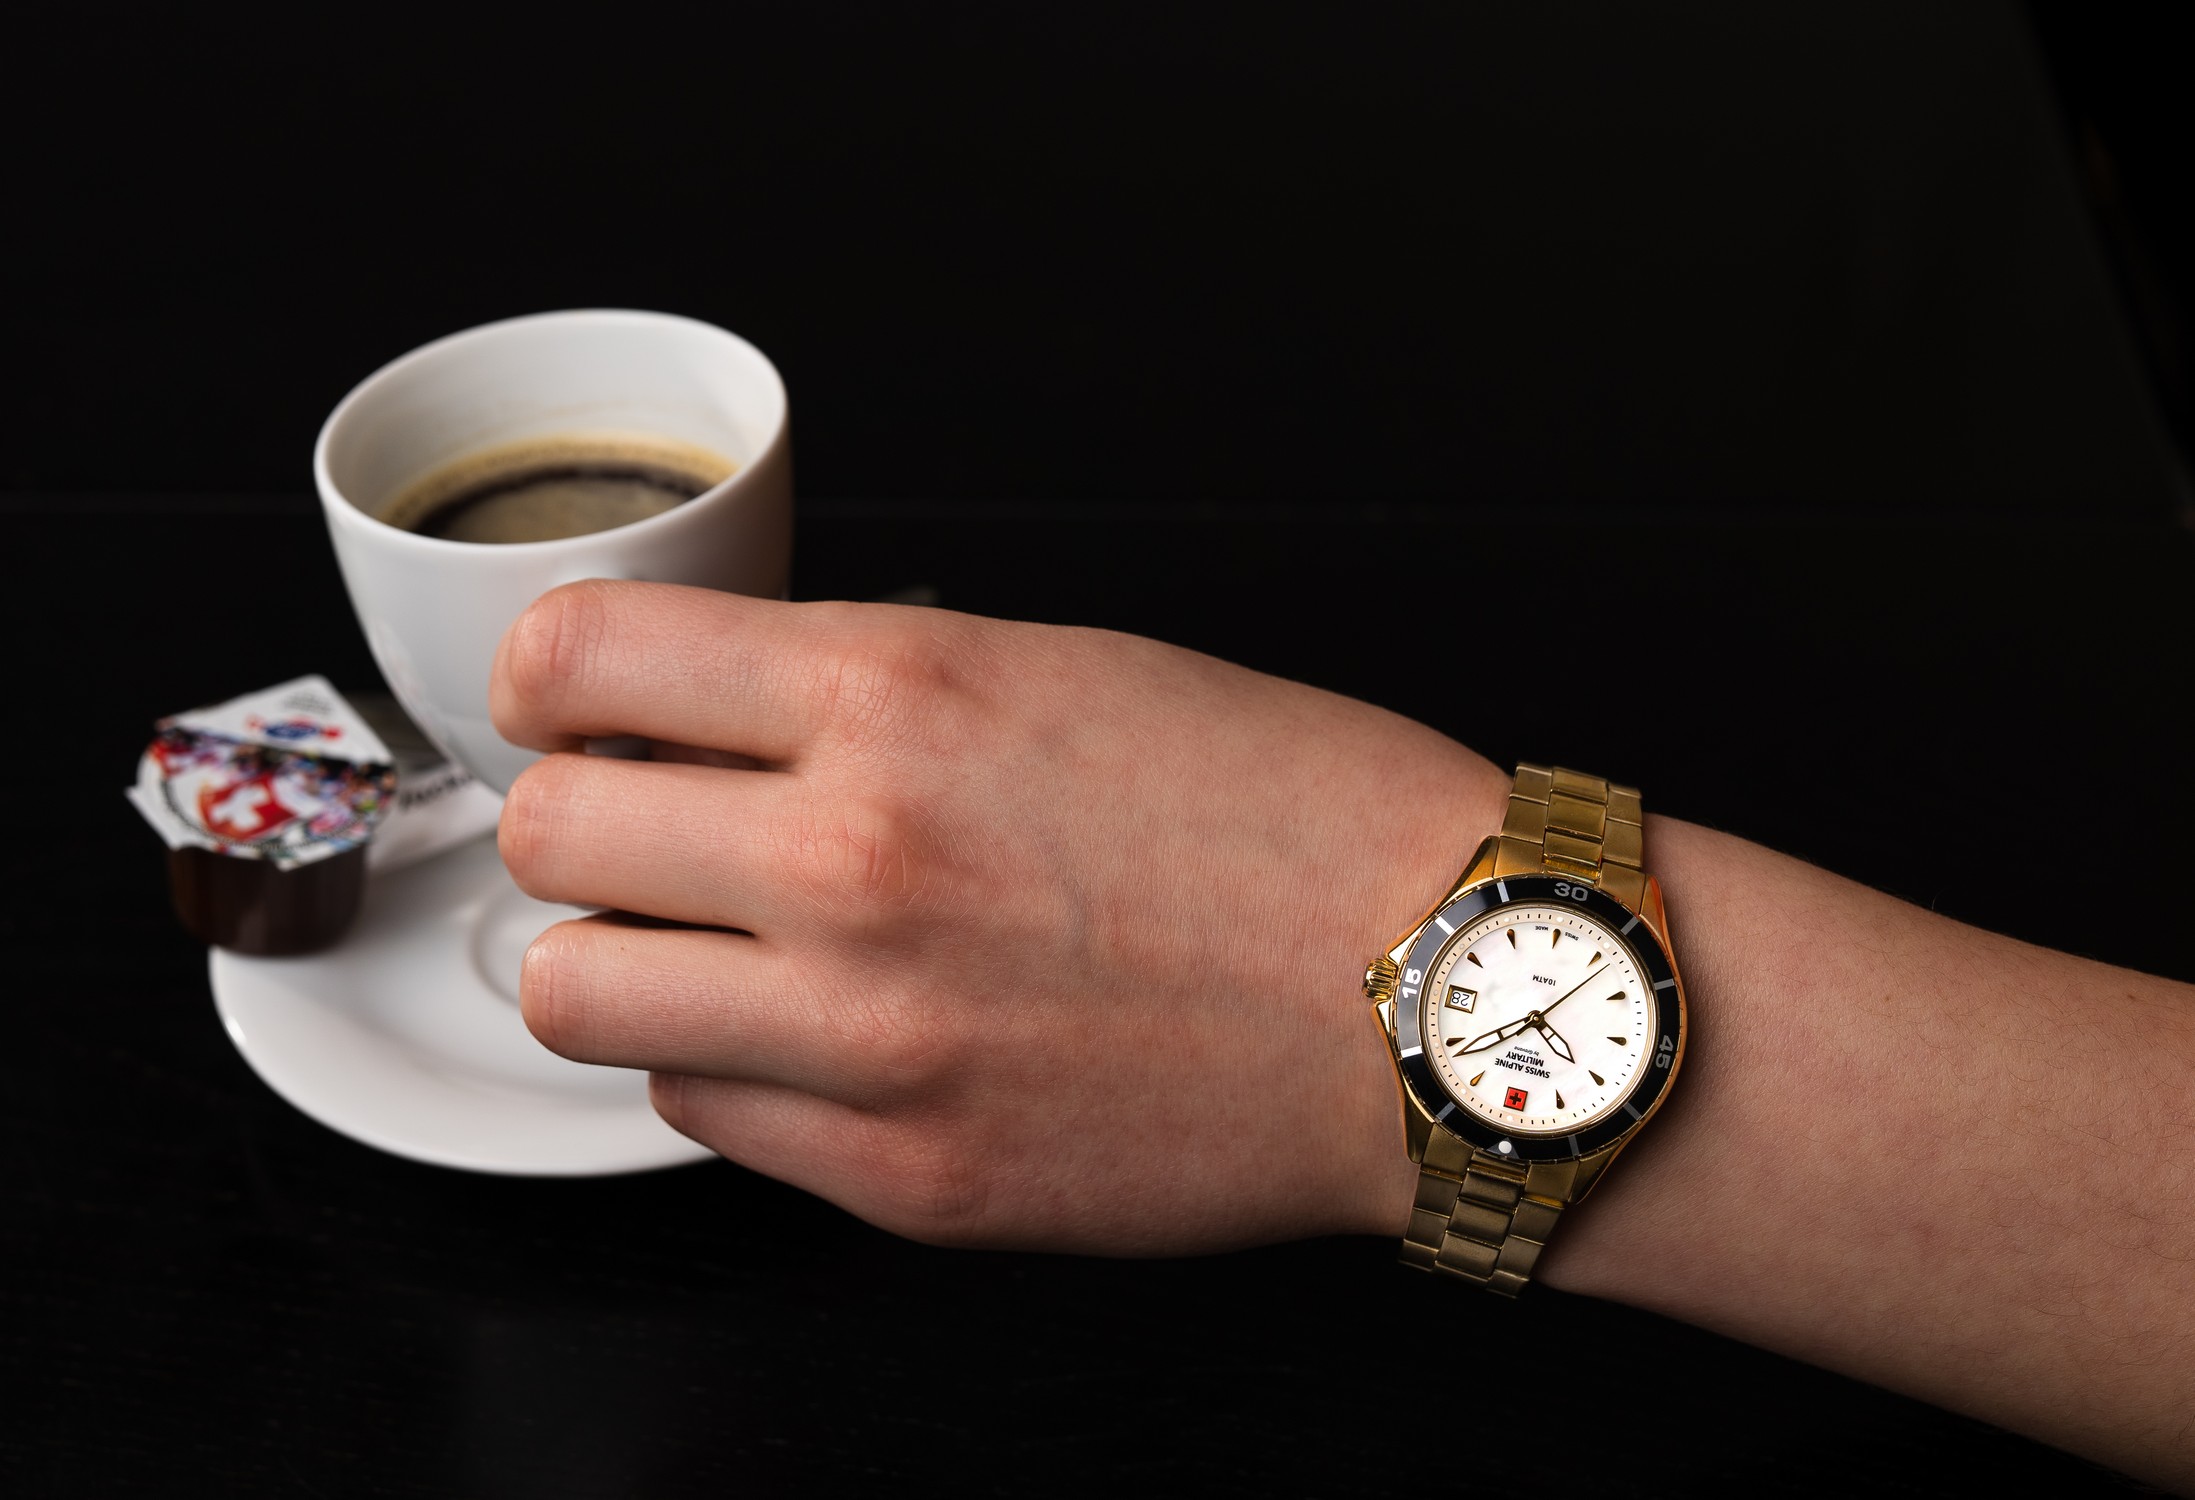 SWISS ALPINE MILITARY  Женские швейцарские часы, кварцевый механизм, сталь с покрытием, 36 мм